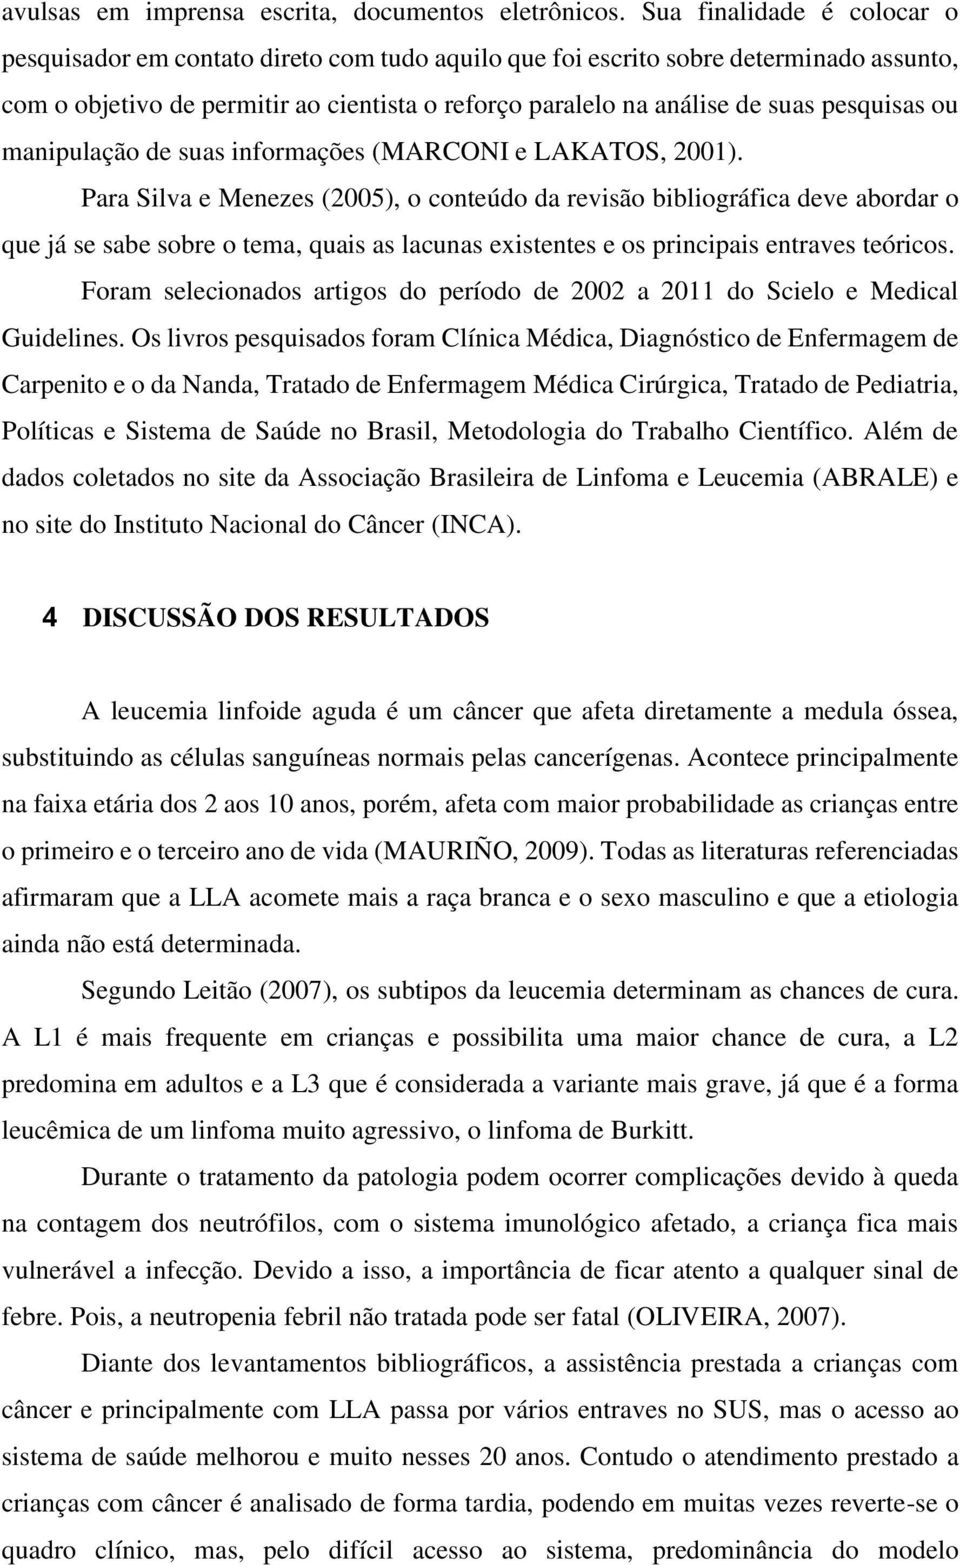 pesquisas ou manipulação de suas informações (MARCONI e LAKATOS, 2001).